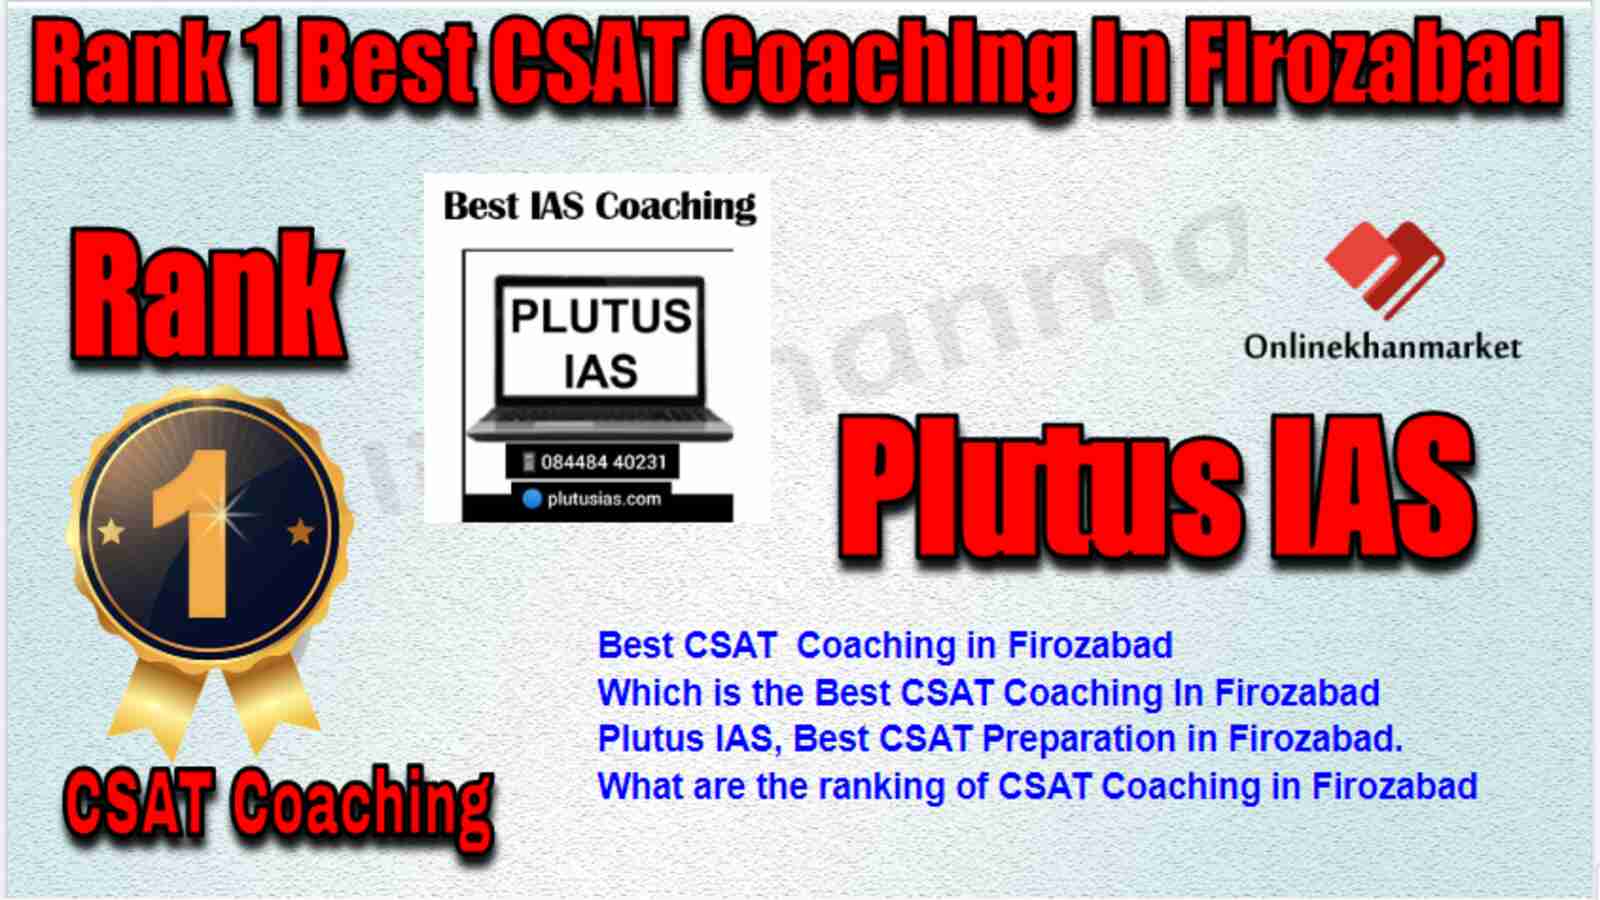 Rank 1 Best CSAT Coaching in Firozabad